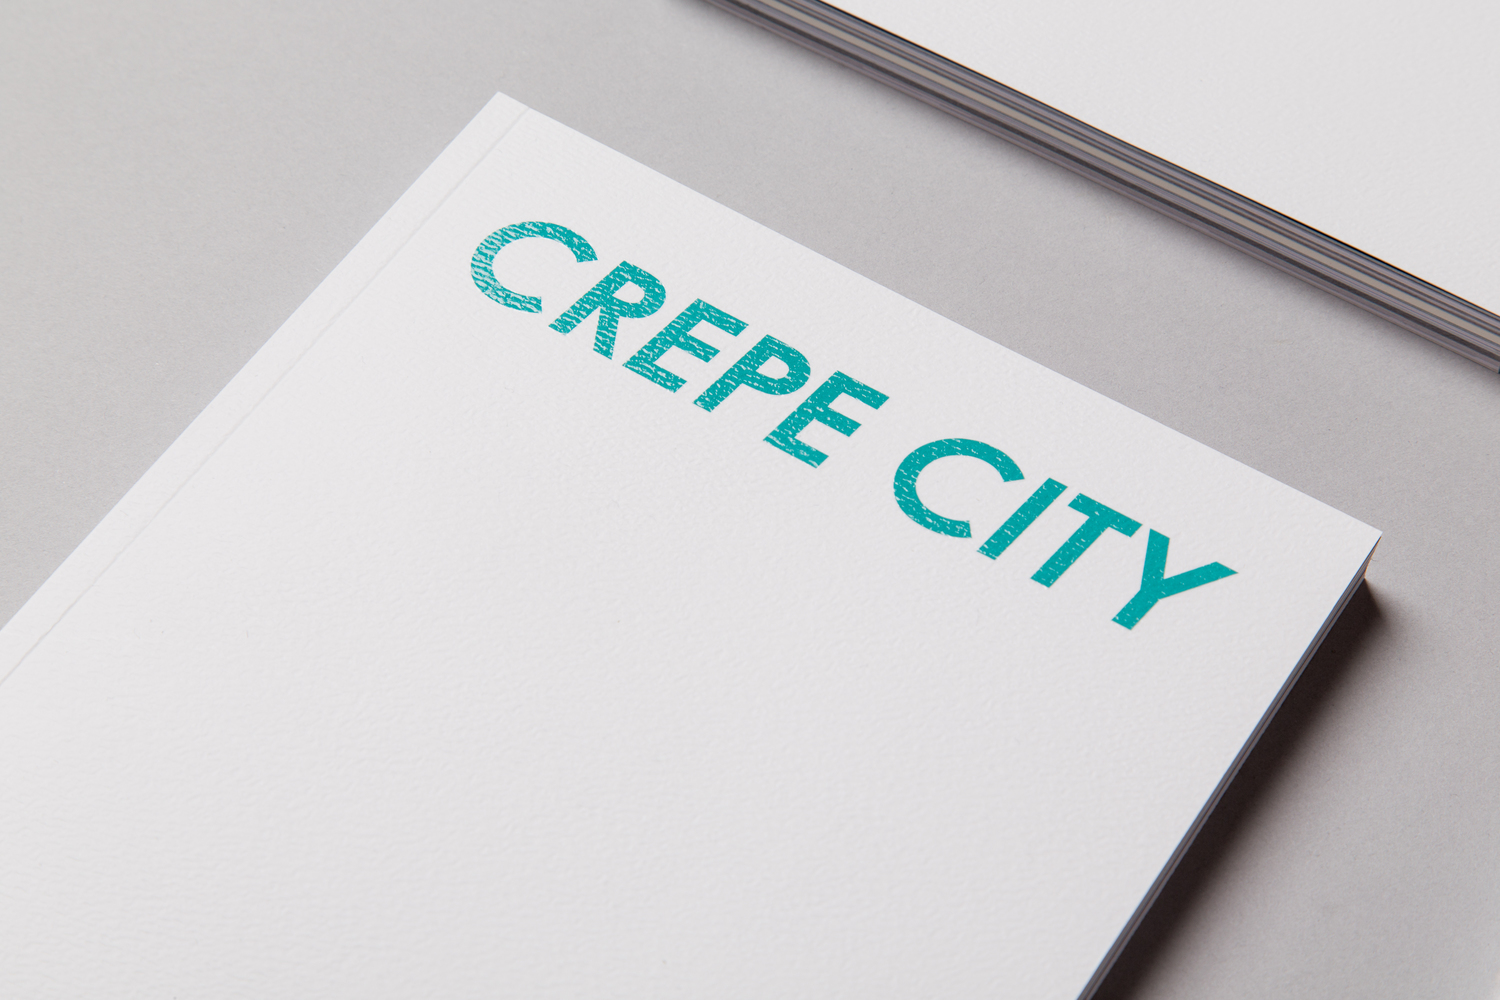 Crepe City Magazine #1